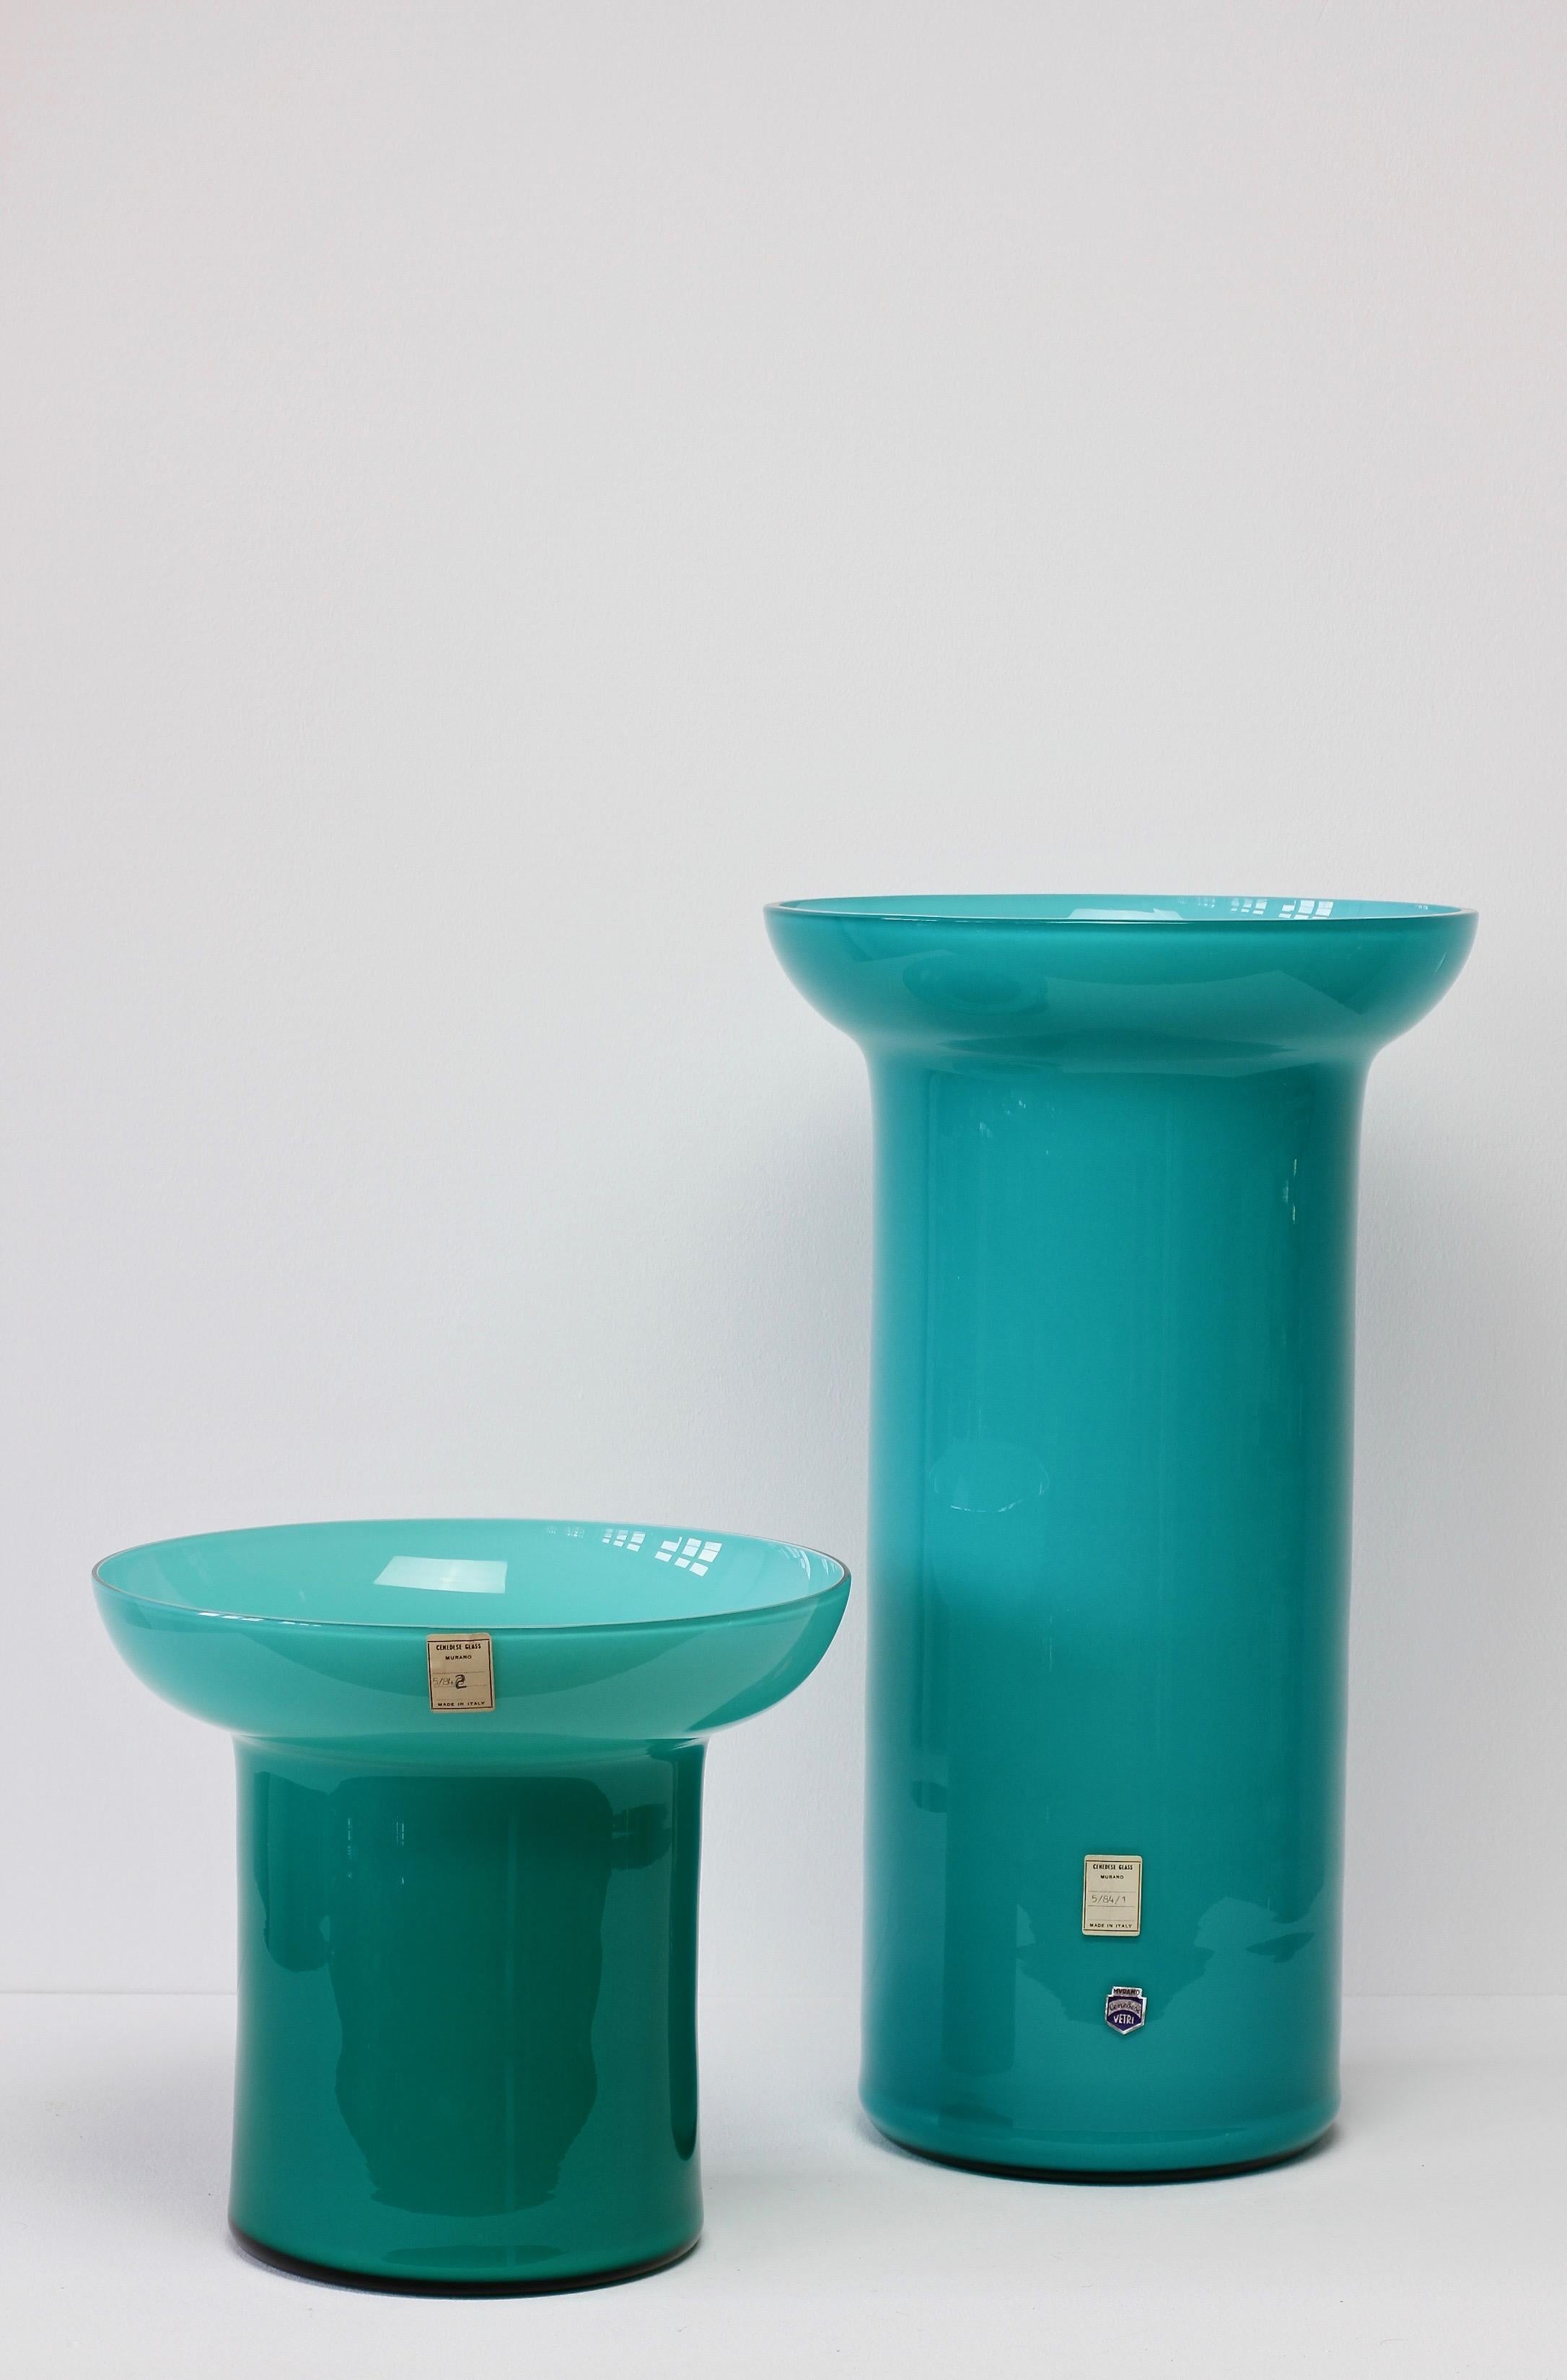 Monumentales großes Vasenpaar von Cenedese Glas aus Murano, Italien, um 1984. Besonders auffällig sind die elegante Form und die kräftige, petrolblau/türkise Farbe.

Das Original-Papieretikett auf der größeren Vase lautet - 5/84/1 
Das